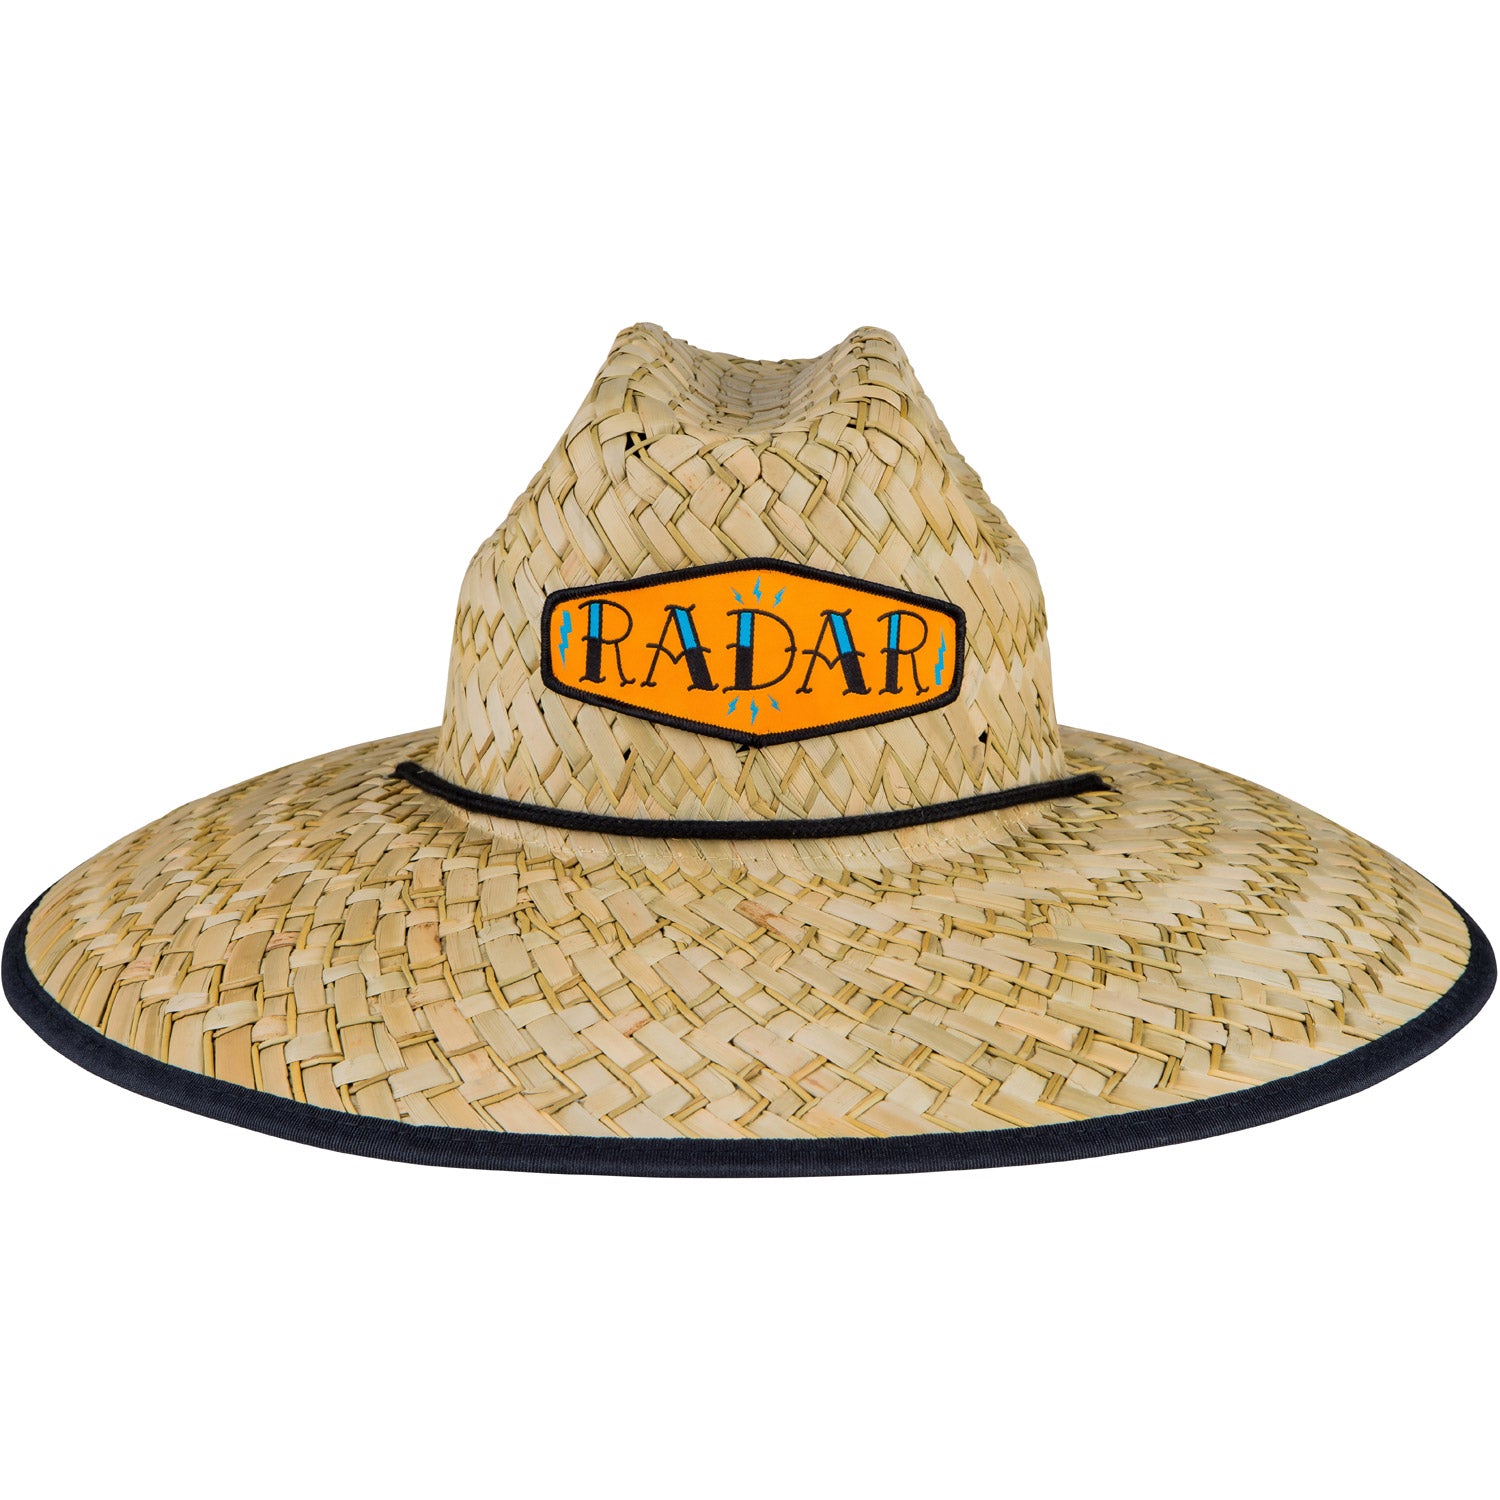 Paddler's Sun Hat